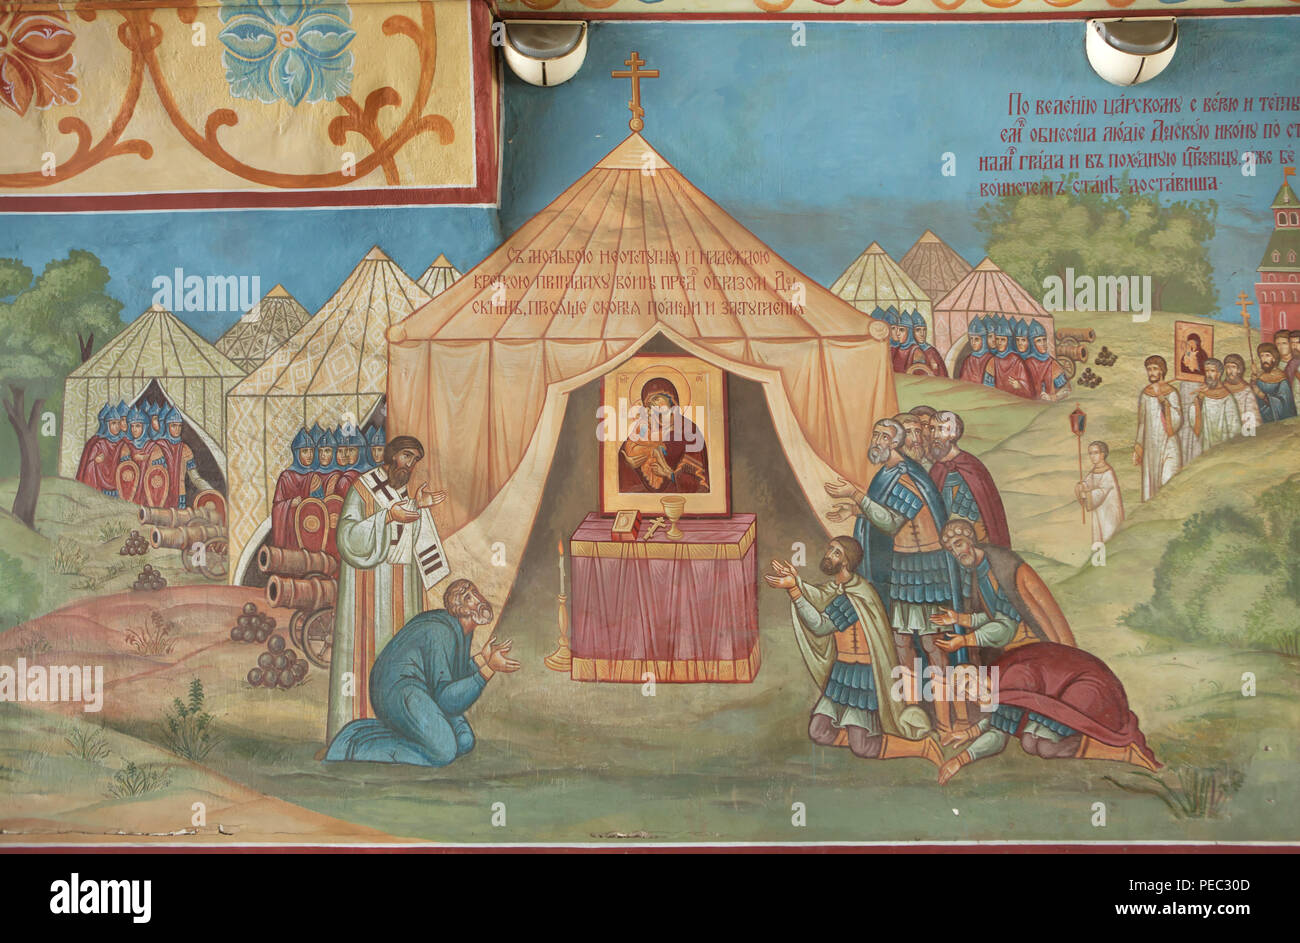 Les guerriers de prière devant l'icône de Notre Dame du don à la veille de la bataille avec l'armée du Khanat de Crimée en 1591 près de Moscou représenté dans la peinture murale dans l'entrée ouest du monastère Donskoï à Moscou, Russie. L'armée de Khan de Crimée Ğazı II Giray envahi dans l'Tsardom de Russie et Moscou ont attaqué à l'été 1591 pendant le règne du tsar Feodor Ier de Russie. L'armée de Crimée a été défait par les Moscovites dirigé par Fyodor Mstislavsky et Boris Godounov. Le monastère de Donskoï consacrée à l'icône de Notre Dame du don a été établie sur le champ de bataille dans la même y Banque D'Images